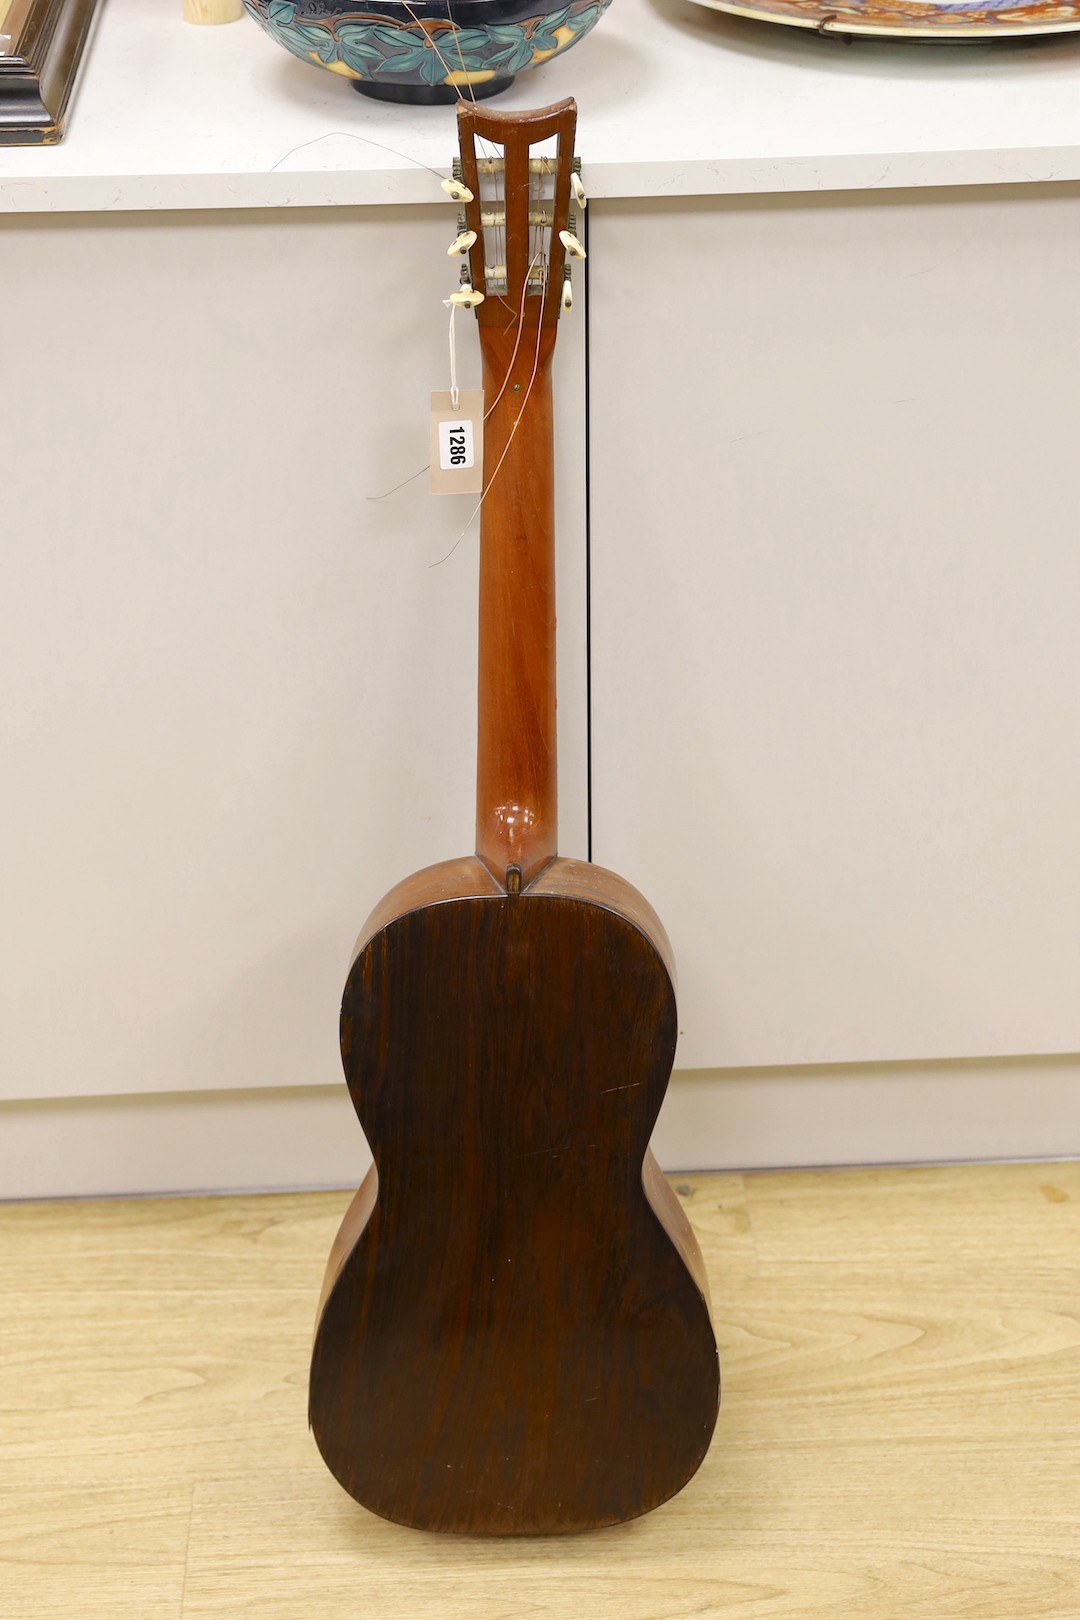 A Victorian parlour guitar